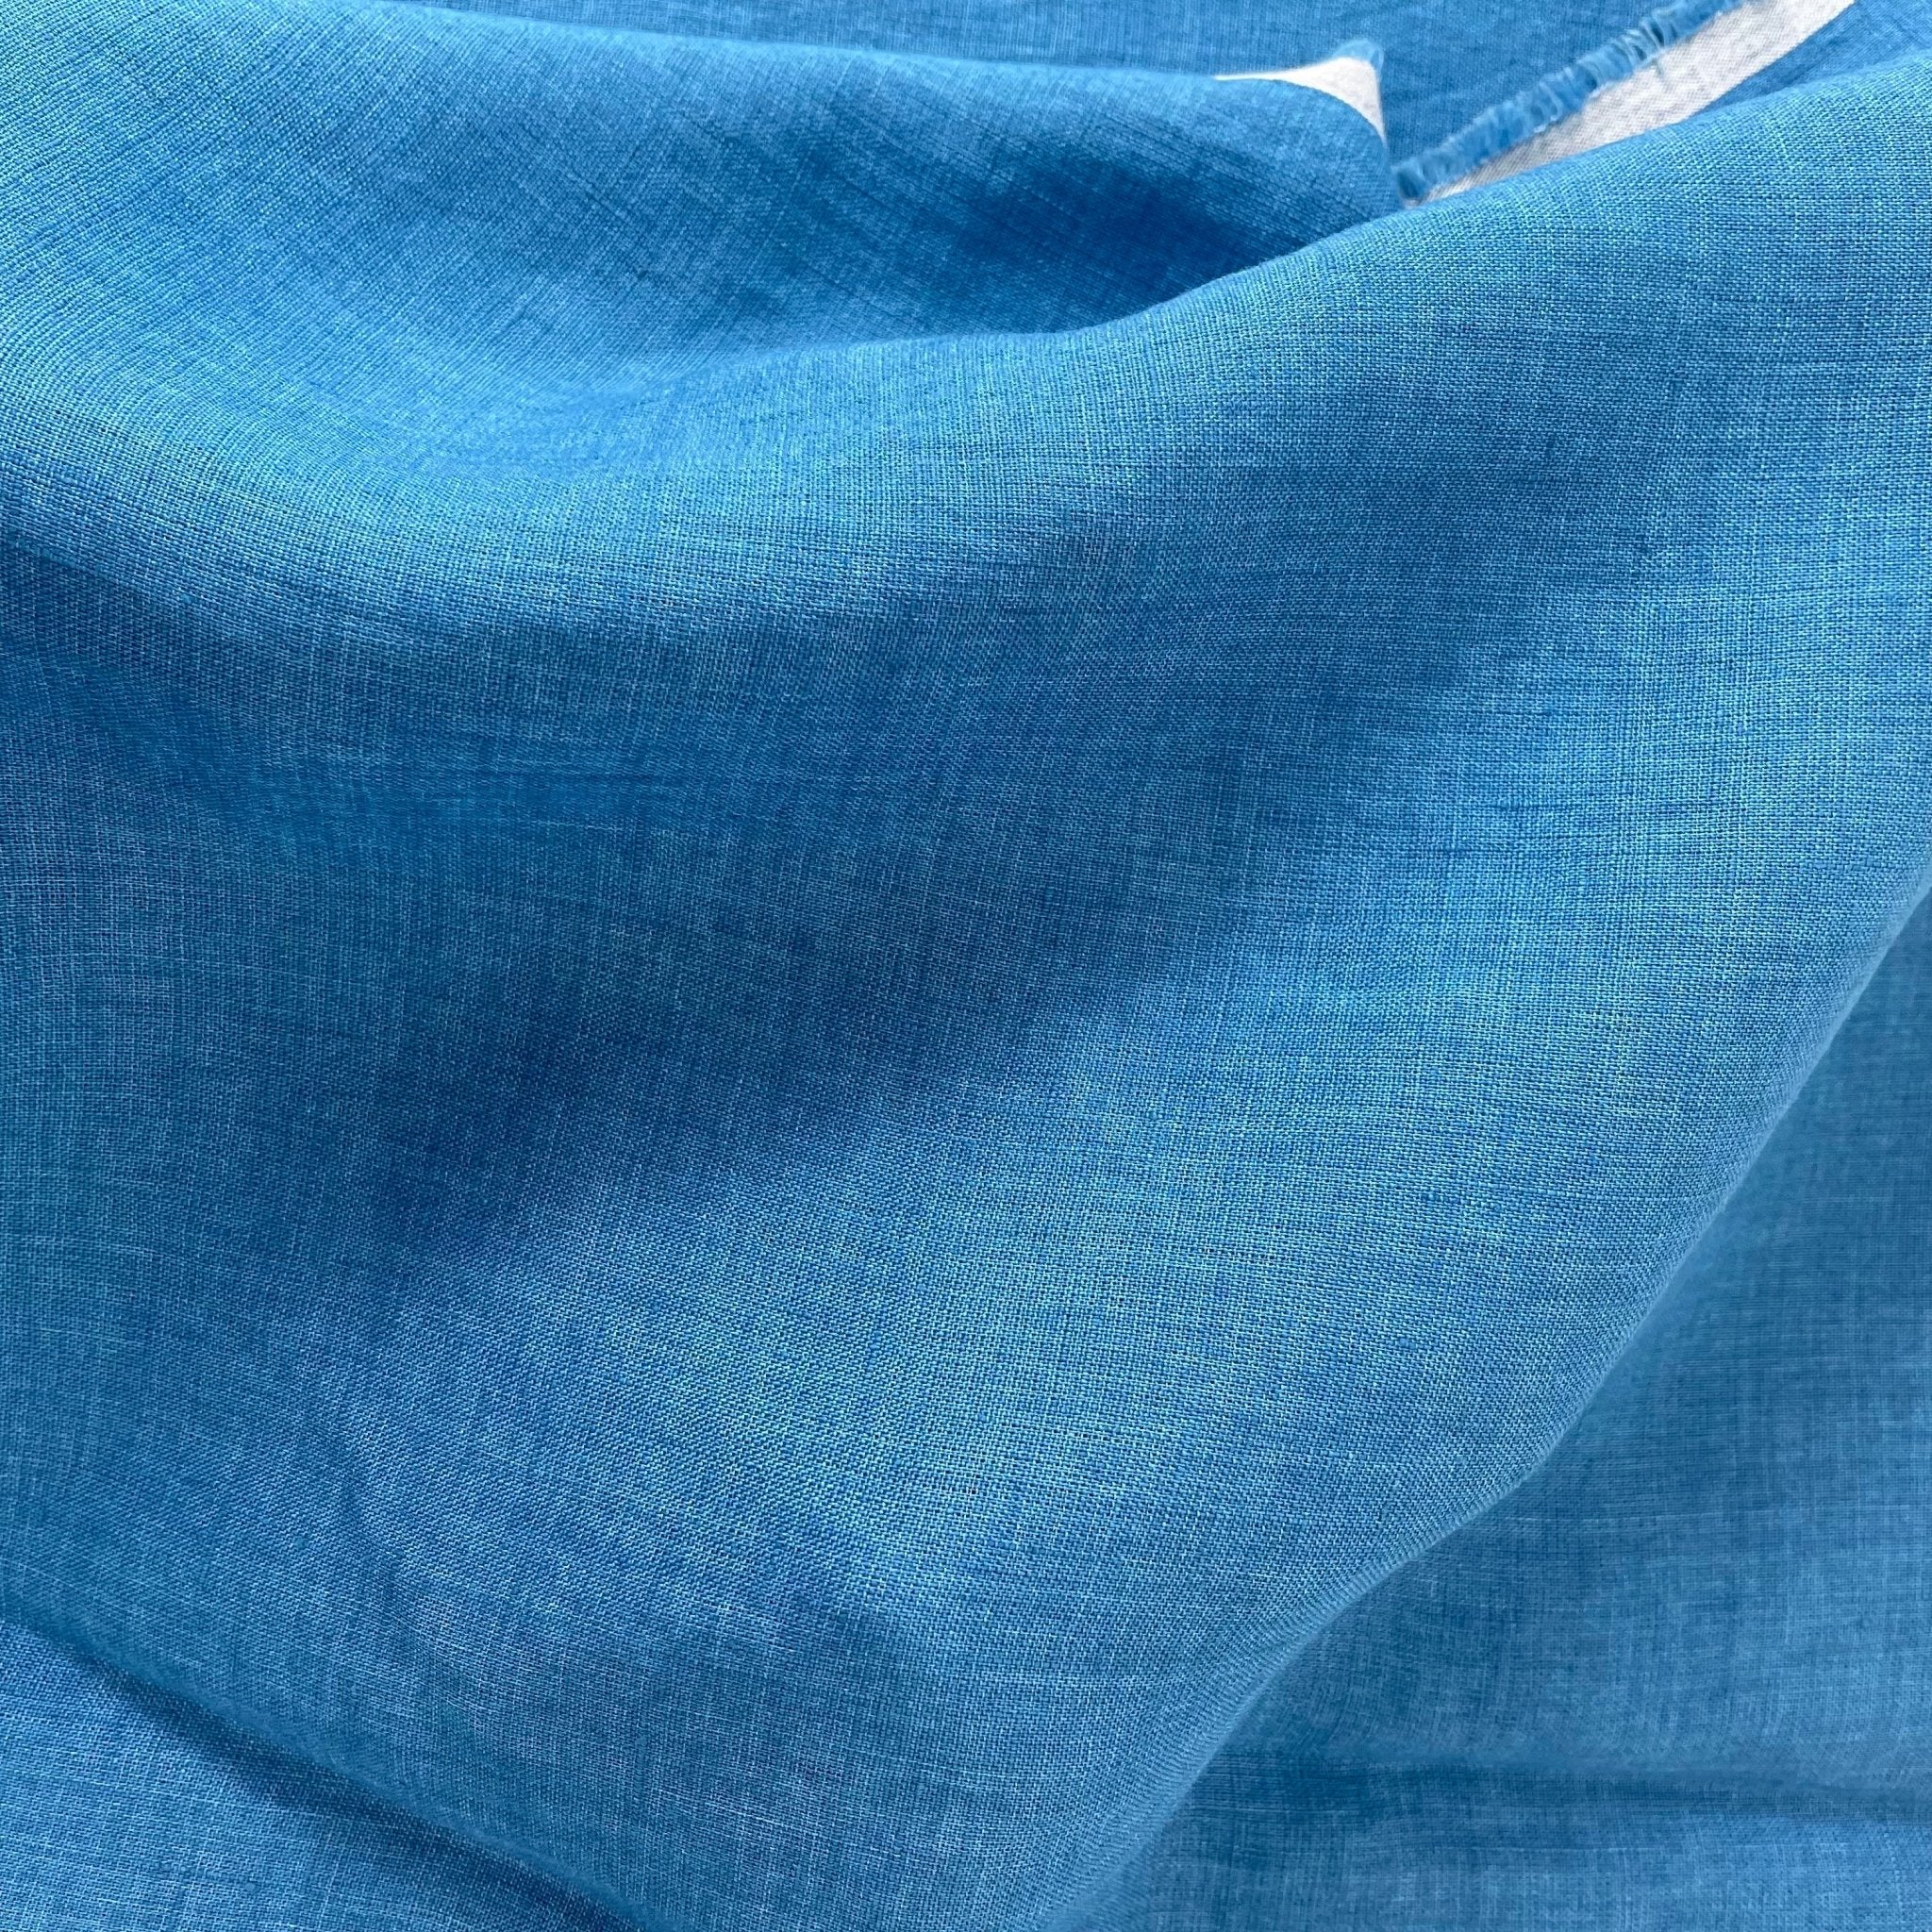 Linen Fabric Light Weight Soft Touch 21S 7115 7031 6785 6271 - The Linen Lab - Blue(dark)